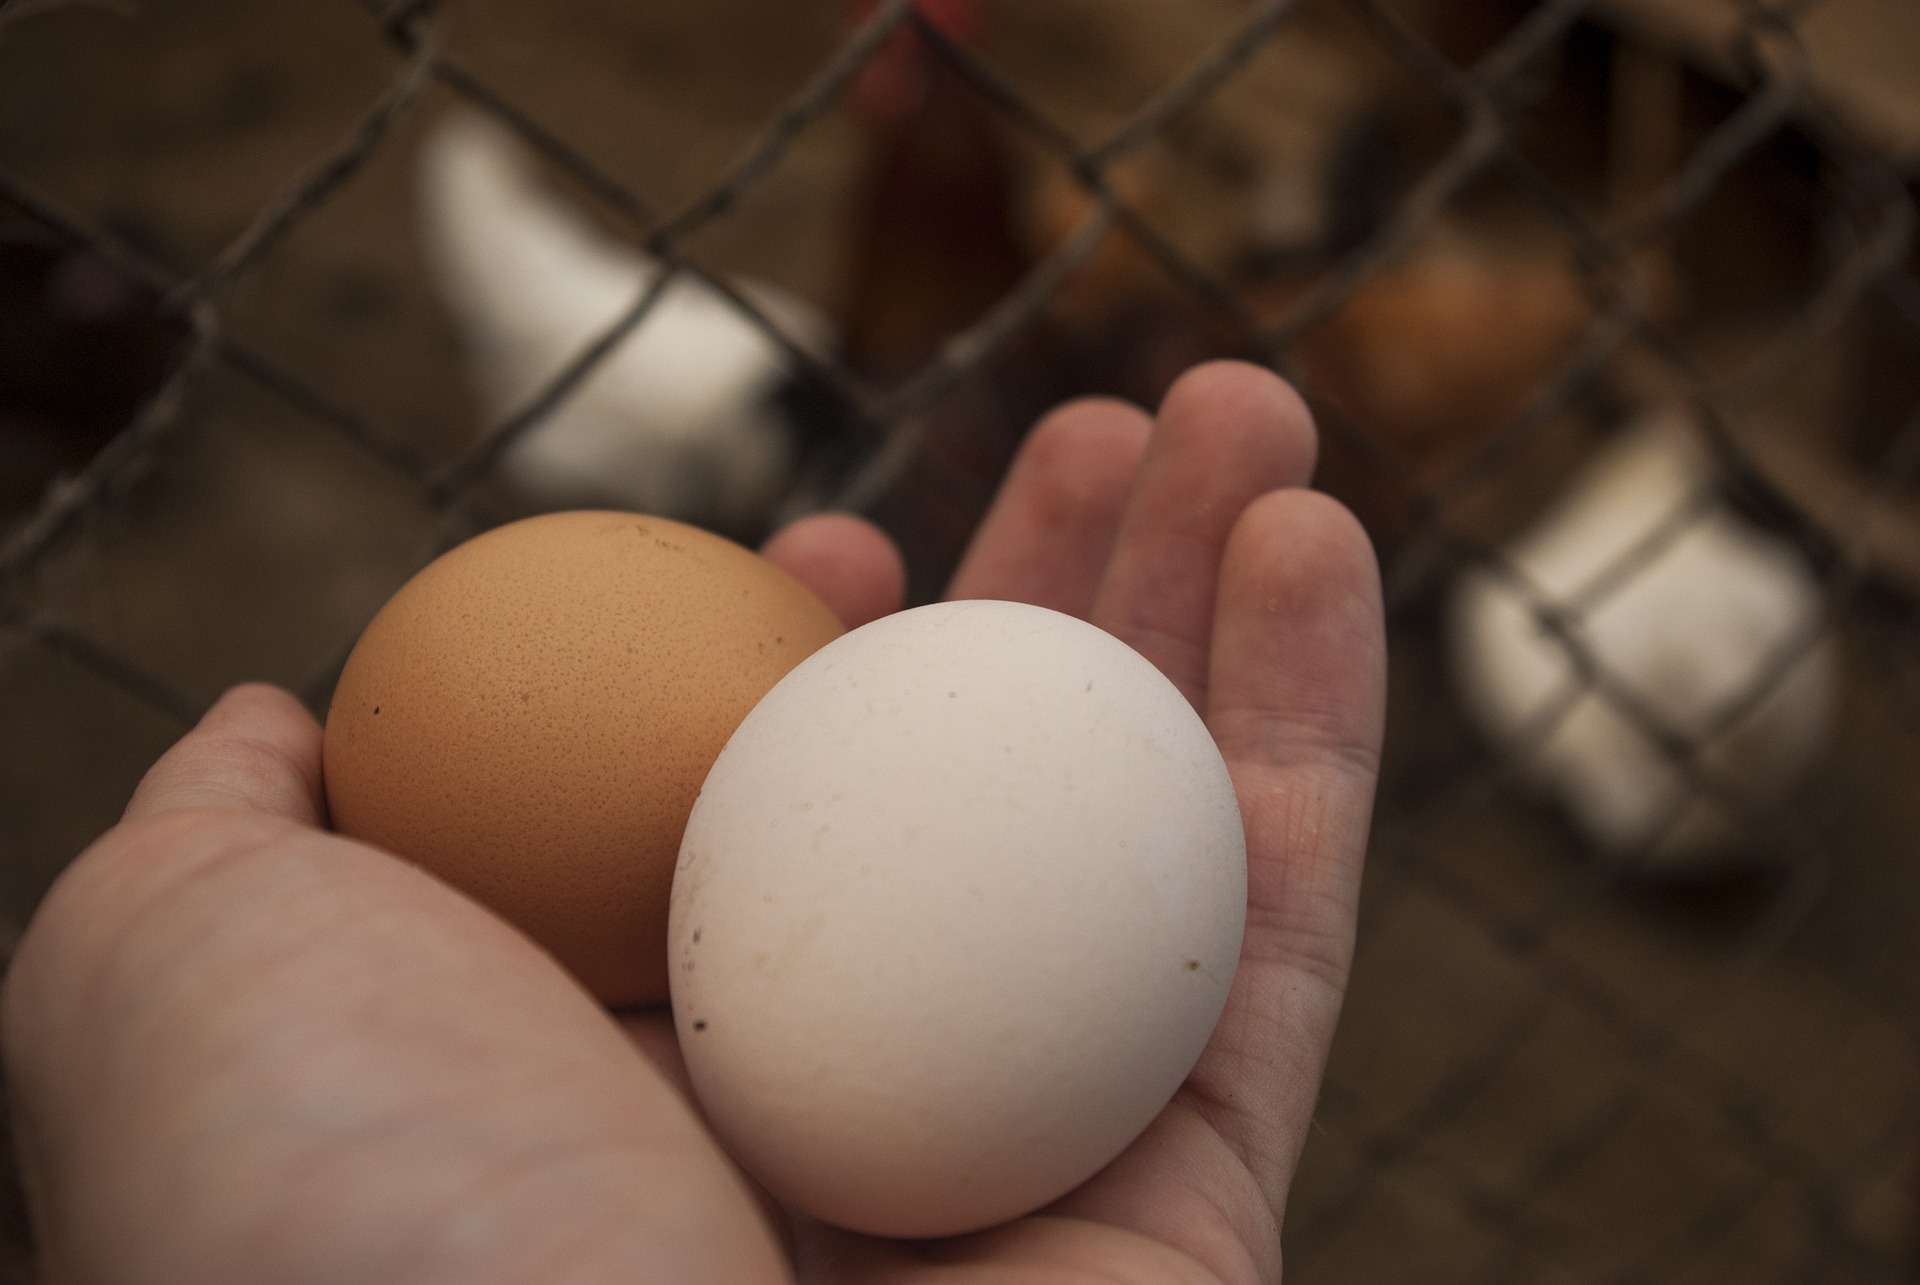 Les œufs de vos poules sont trop pollués pour être consommés en Ile-de-France